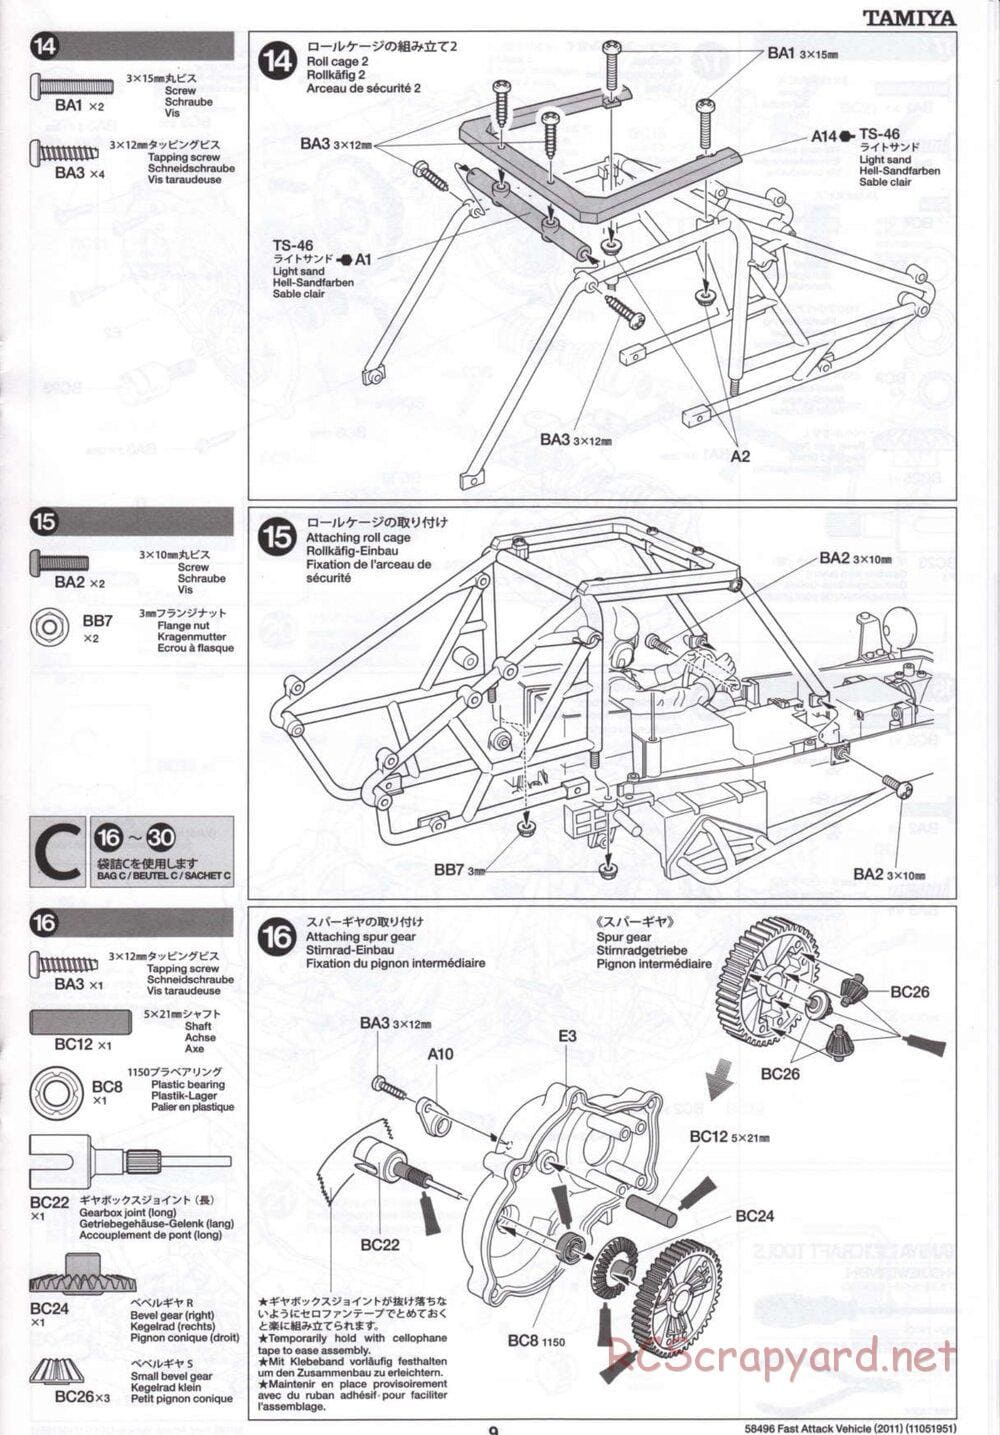 Tamiya - Fast Attack Vehicle 2011 - FAV Chassis - Manual - Page 9